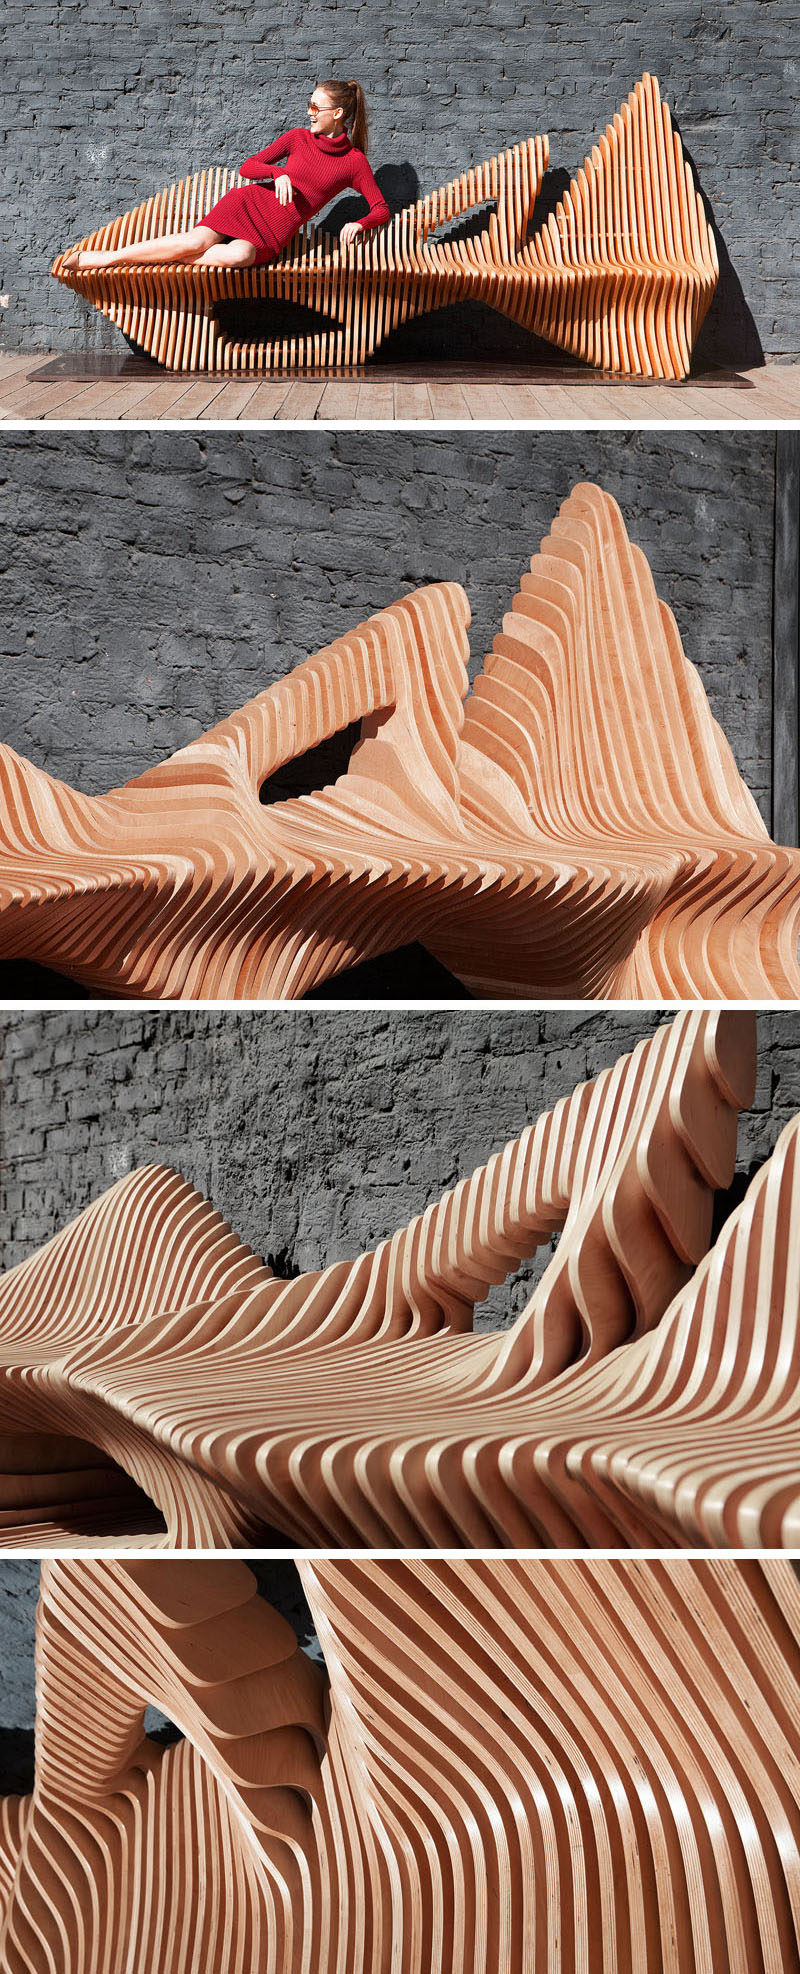 Олег Сороко спроектировал скульптурную деревянную скамейку органичной формы «Скамья« Сокол », вдохновленную одноименной птицей.